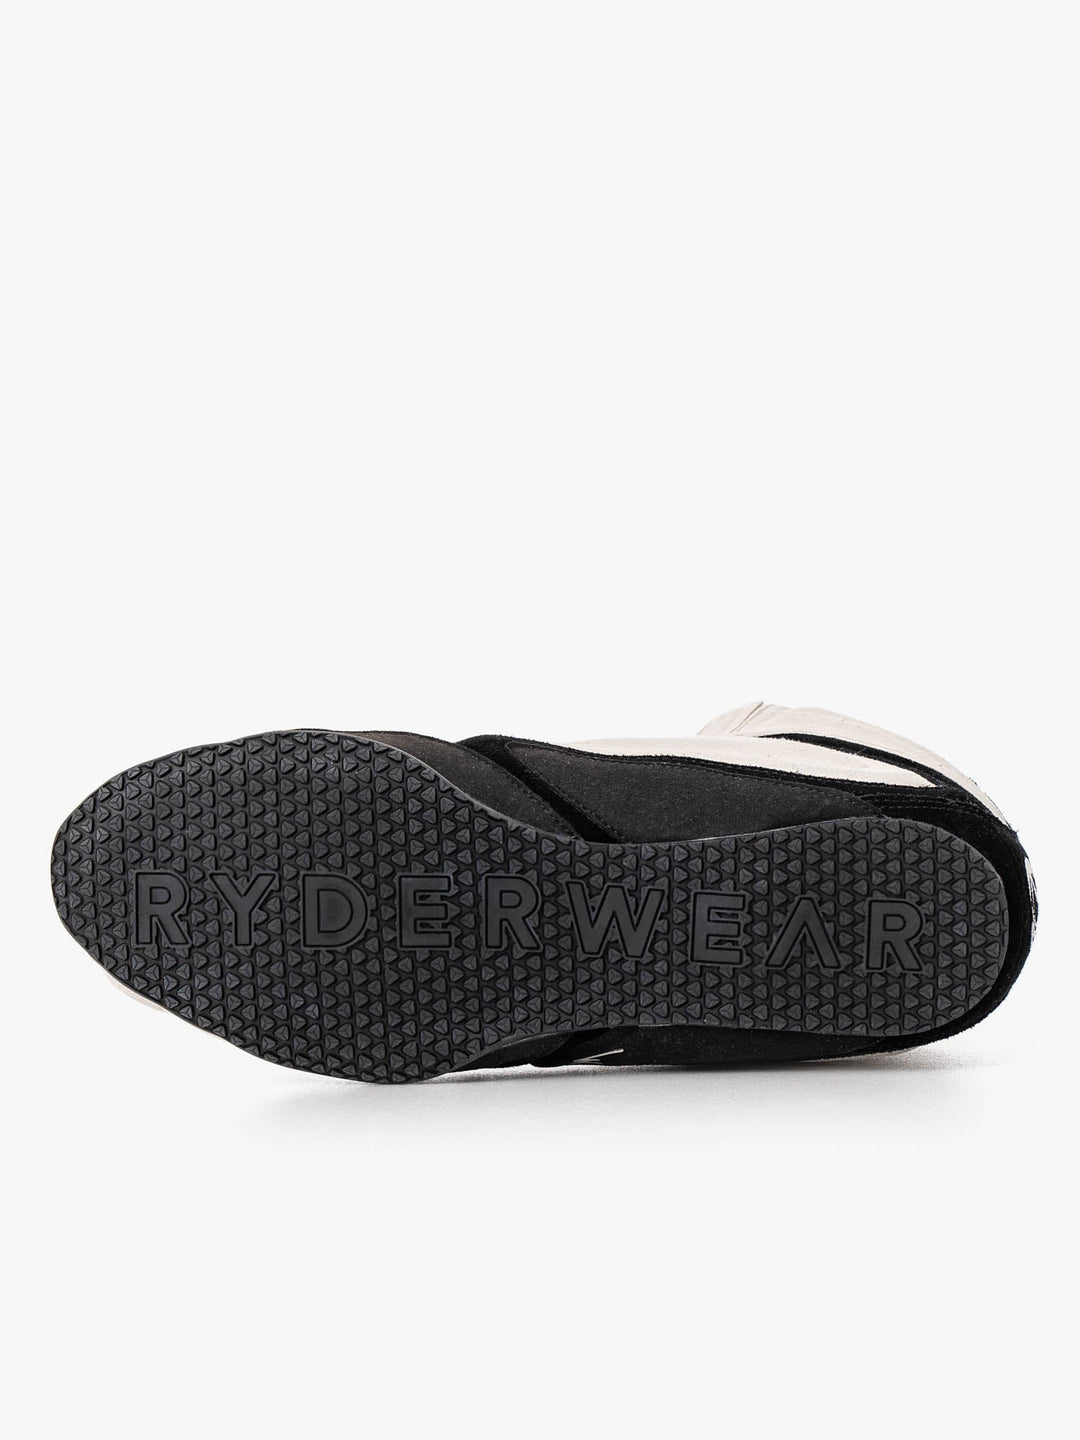 D-Mak 3 - Black/White Shoes Ryderwear 